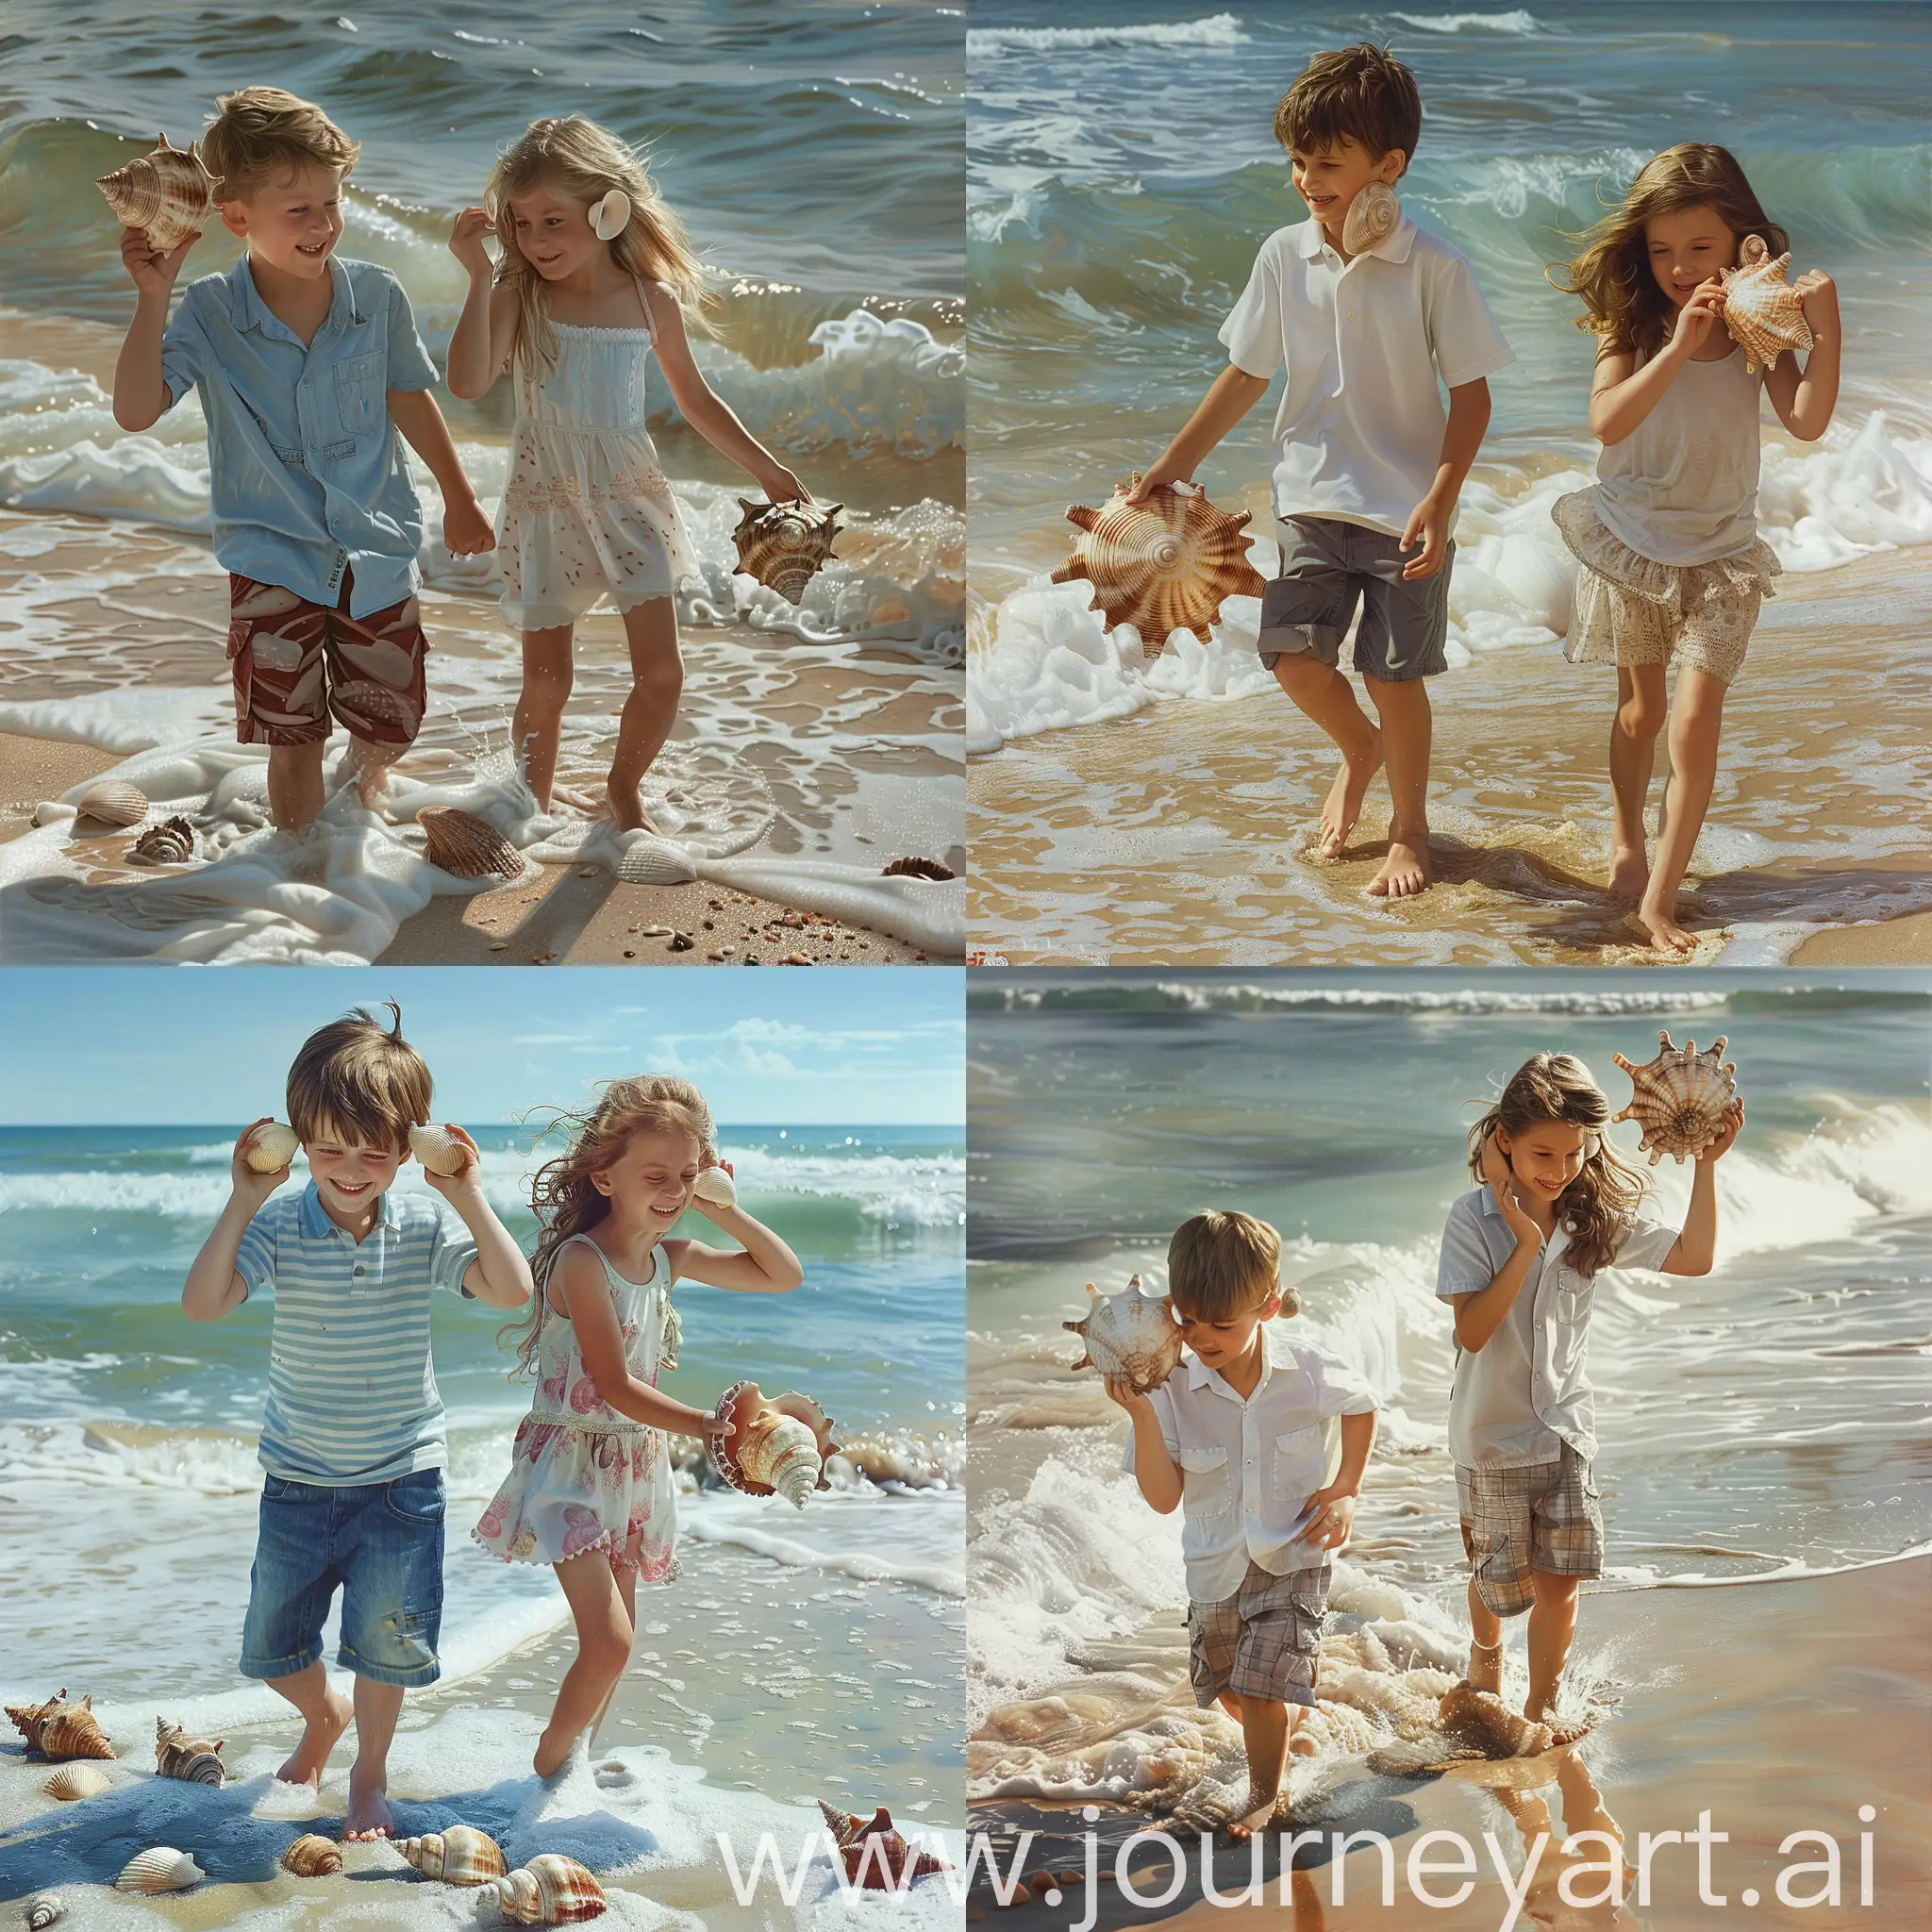 Мальчик и девочка  веселятся, ходят по берегу моря, по песку, по кромке прибоя, собирают раковины и подносят раковины к уху, "слушая море", фотография, гиперреализм, высокое разрешение